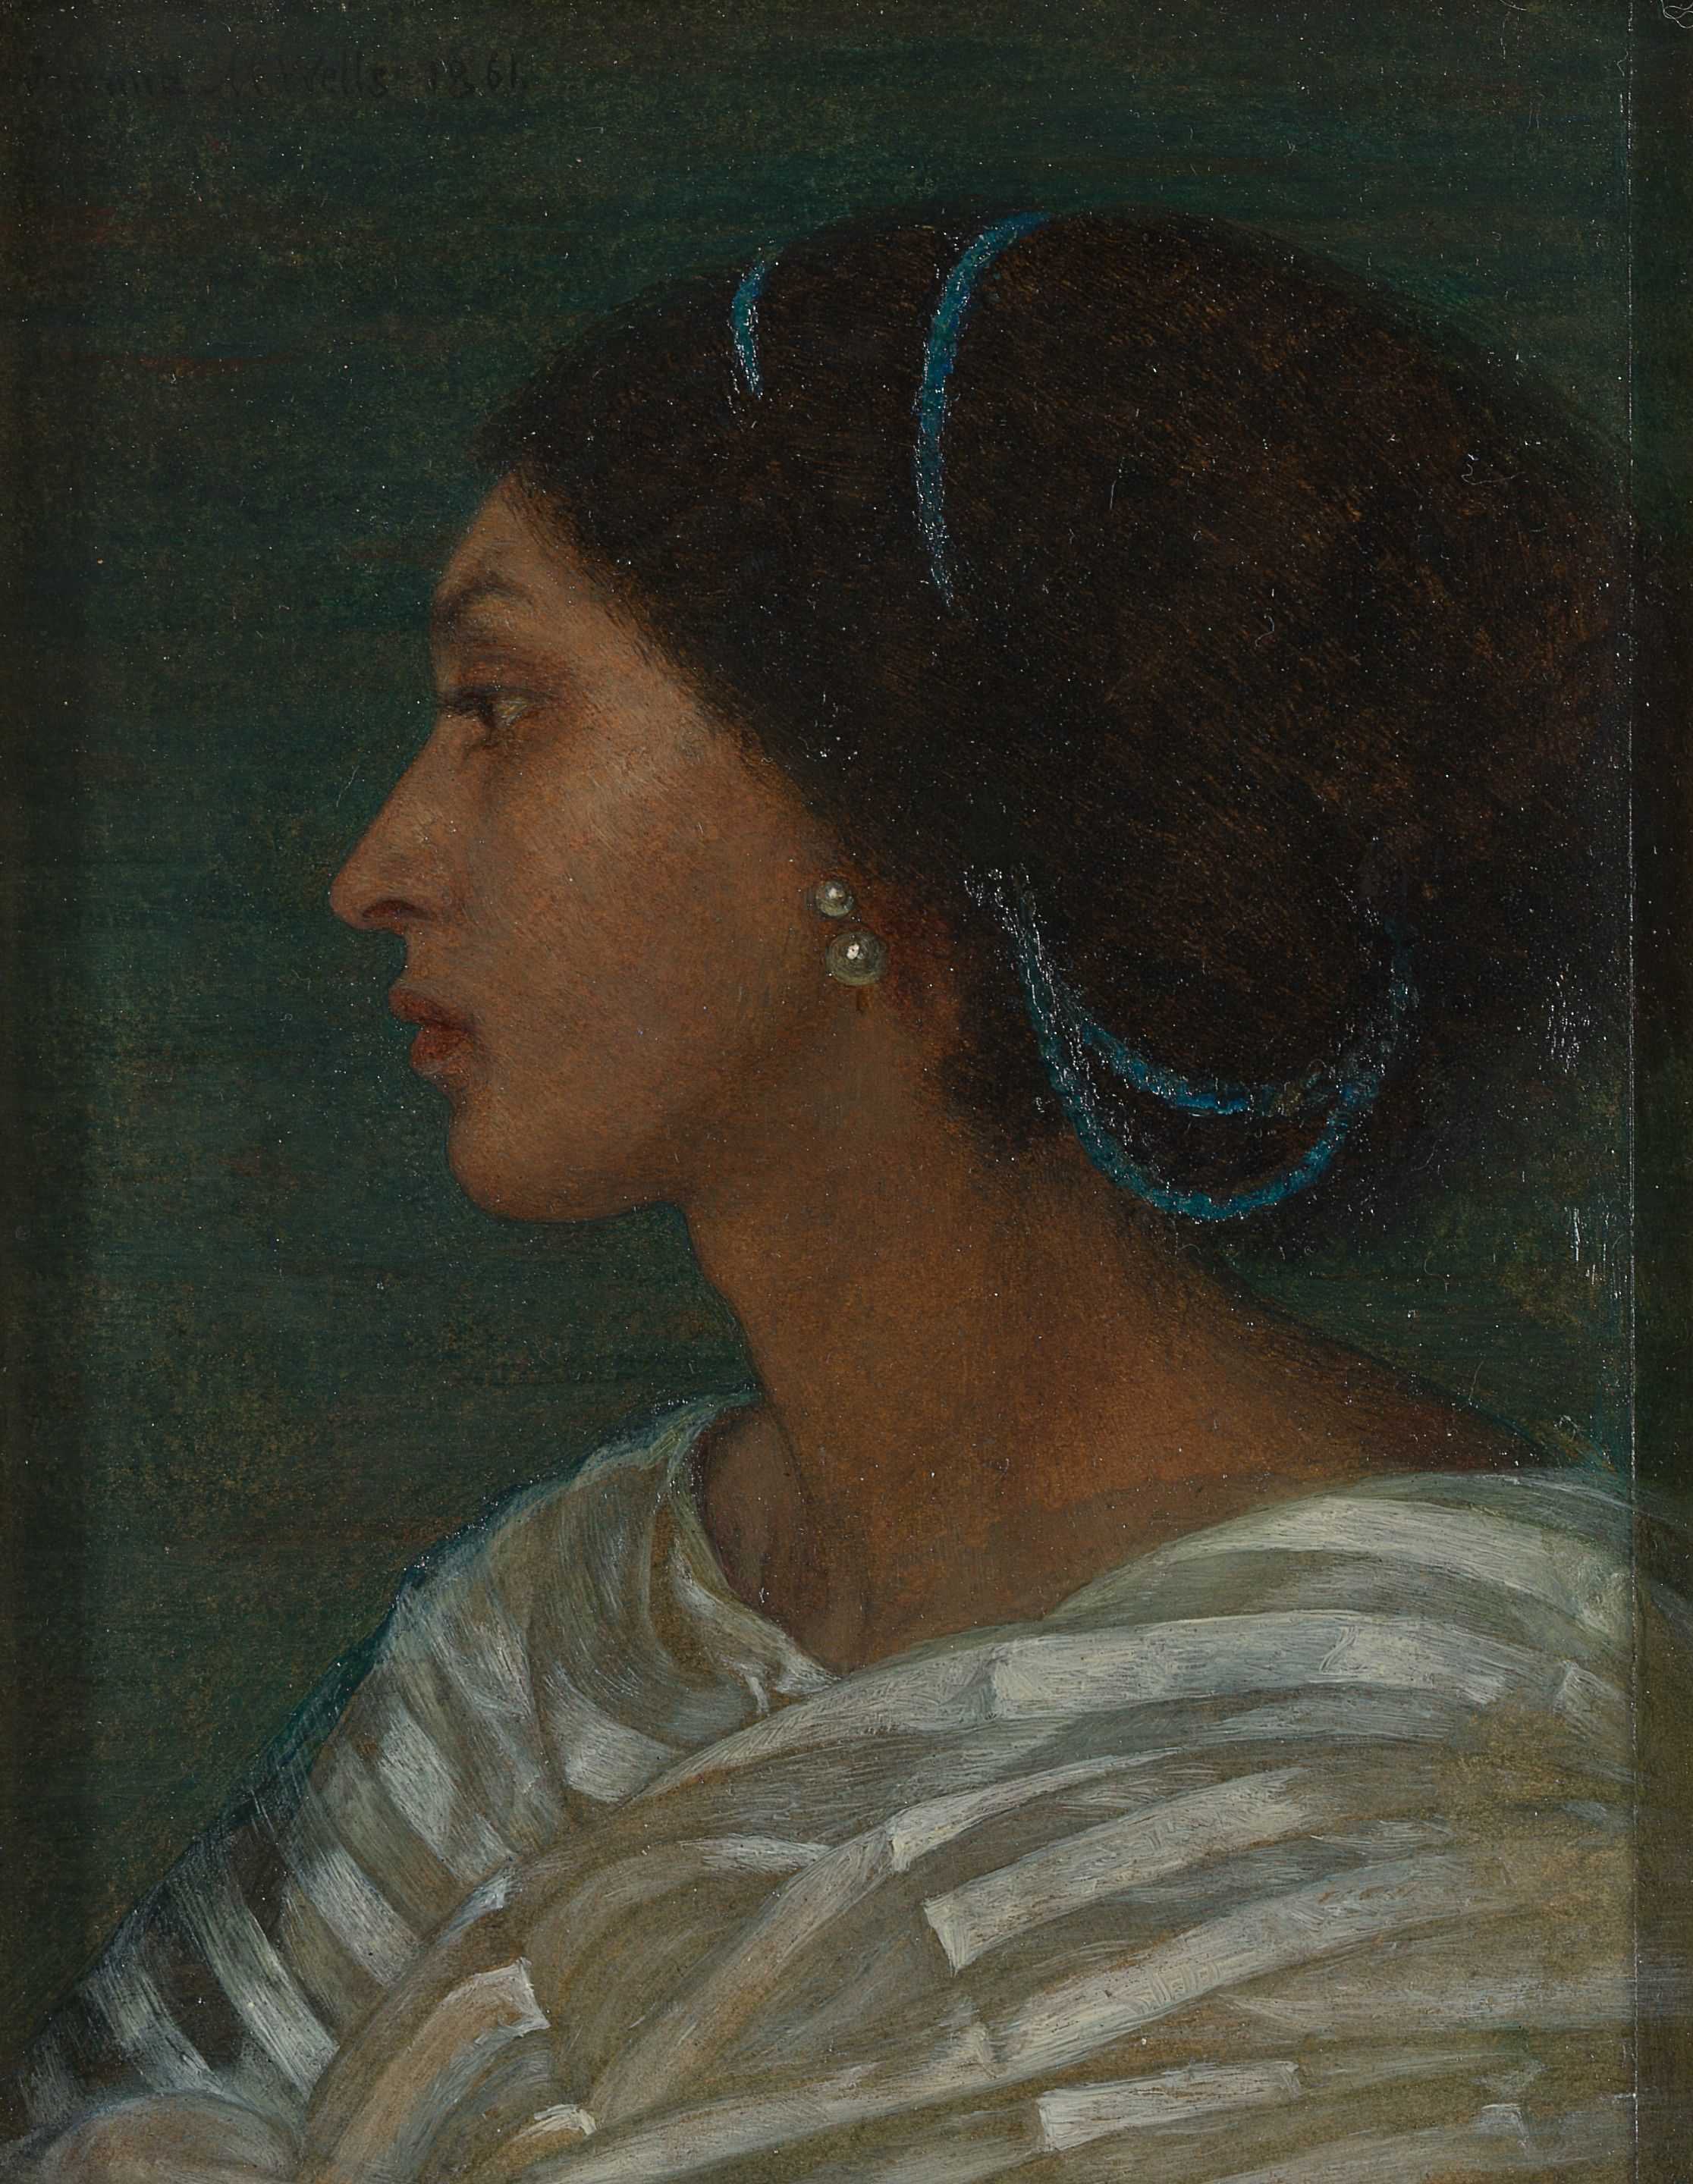 فاني إيتون by Joanna Boyce Wells - 1861 م - 17.1 × 13.7 سم 